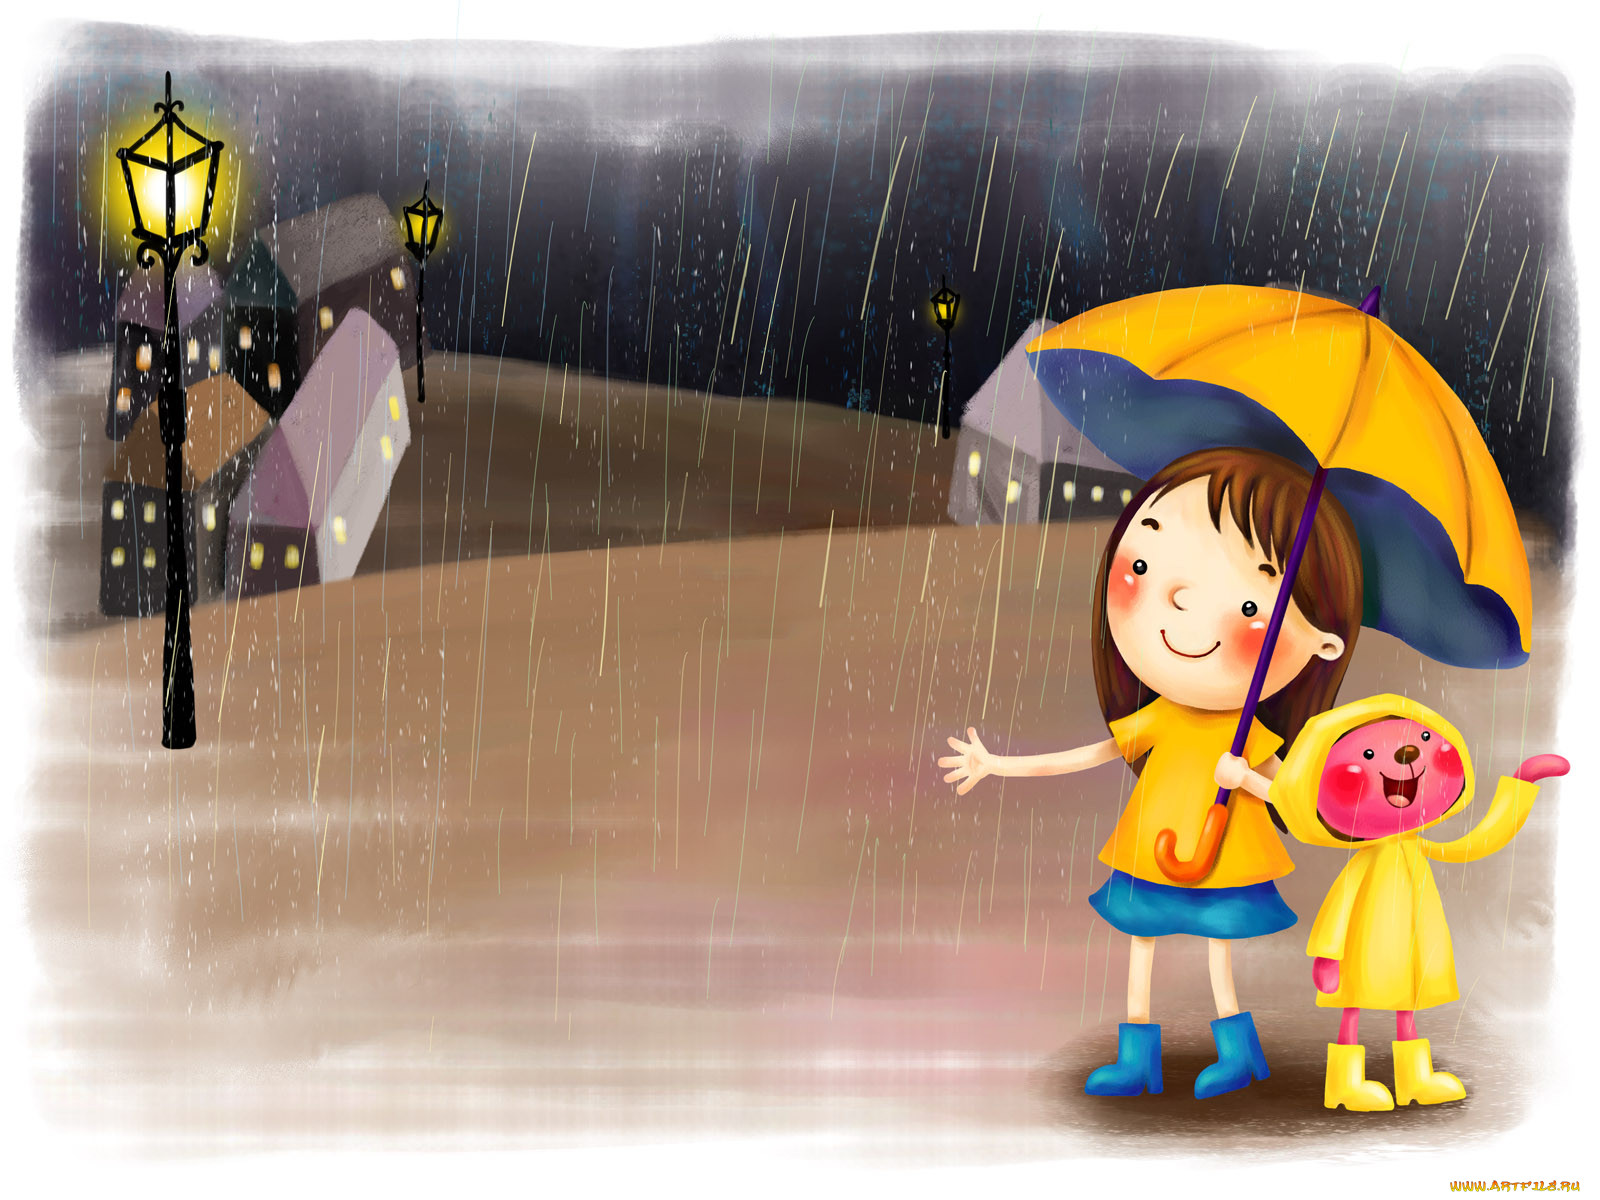 Дождик молчит. День прогвлов под Дождкм. Дети дождя. Дождливый день. Дождь рисунок.